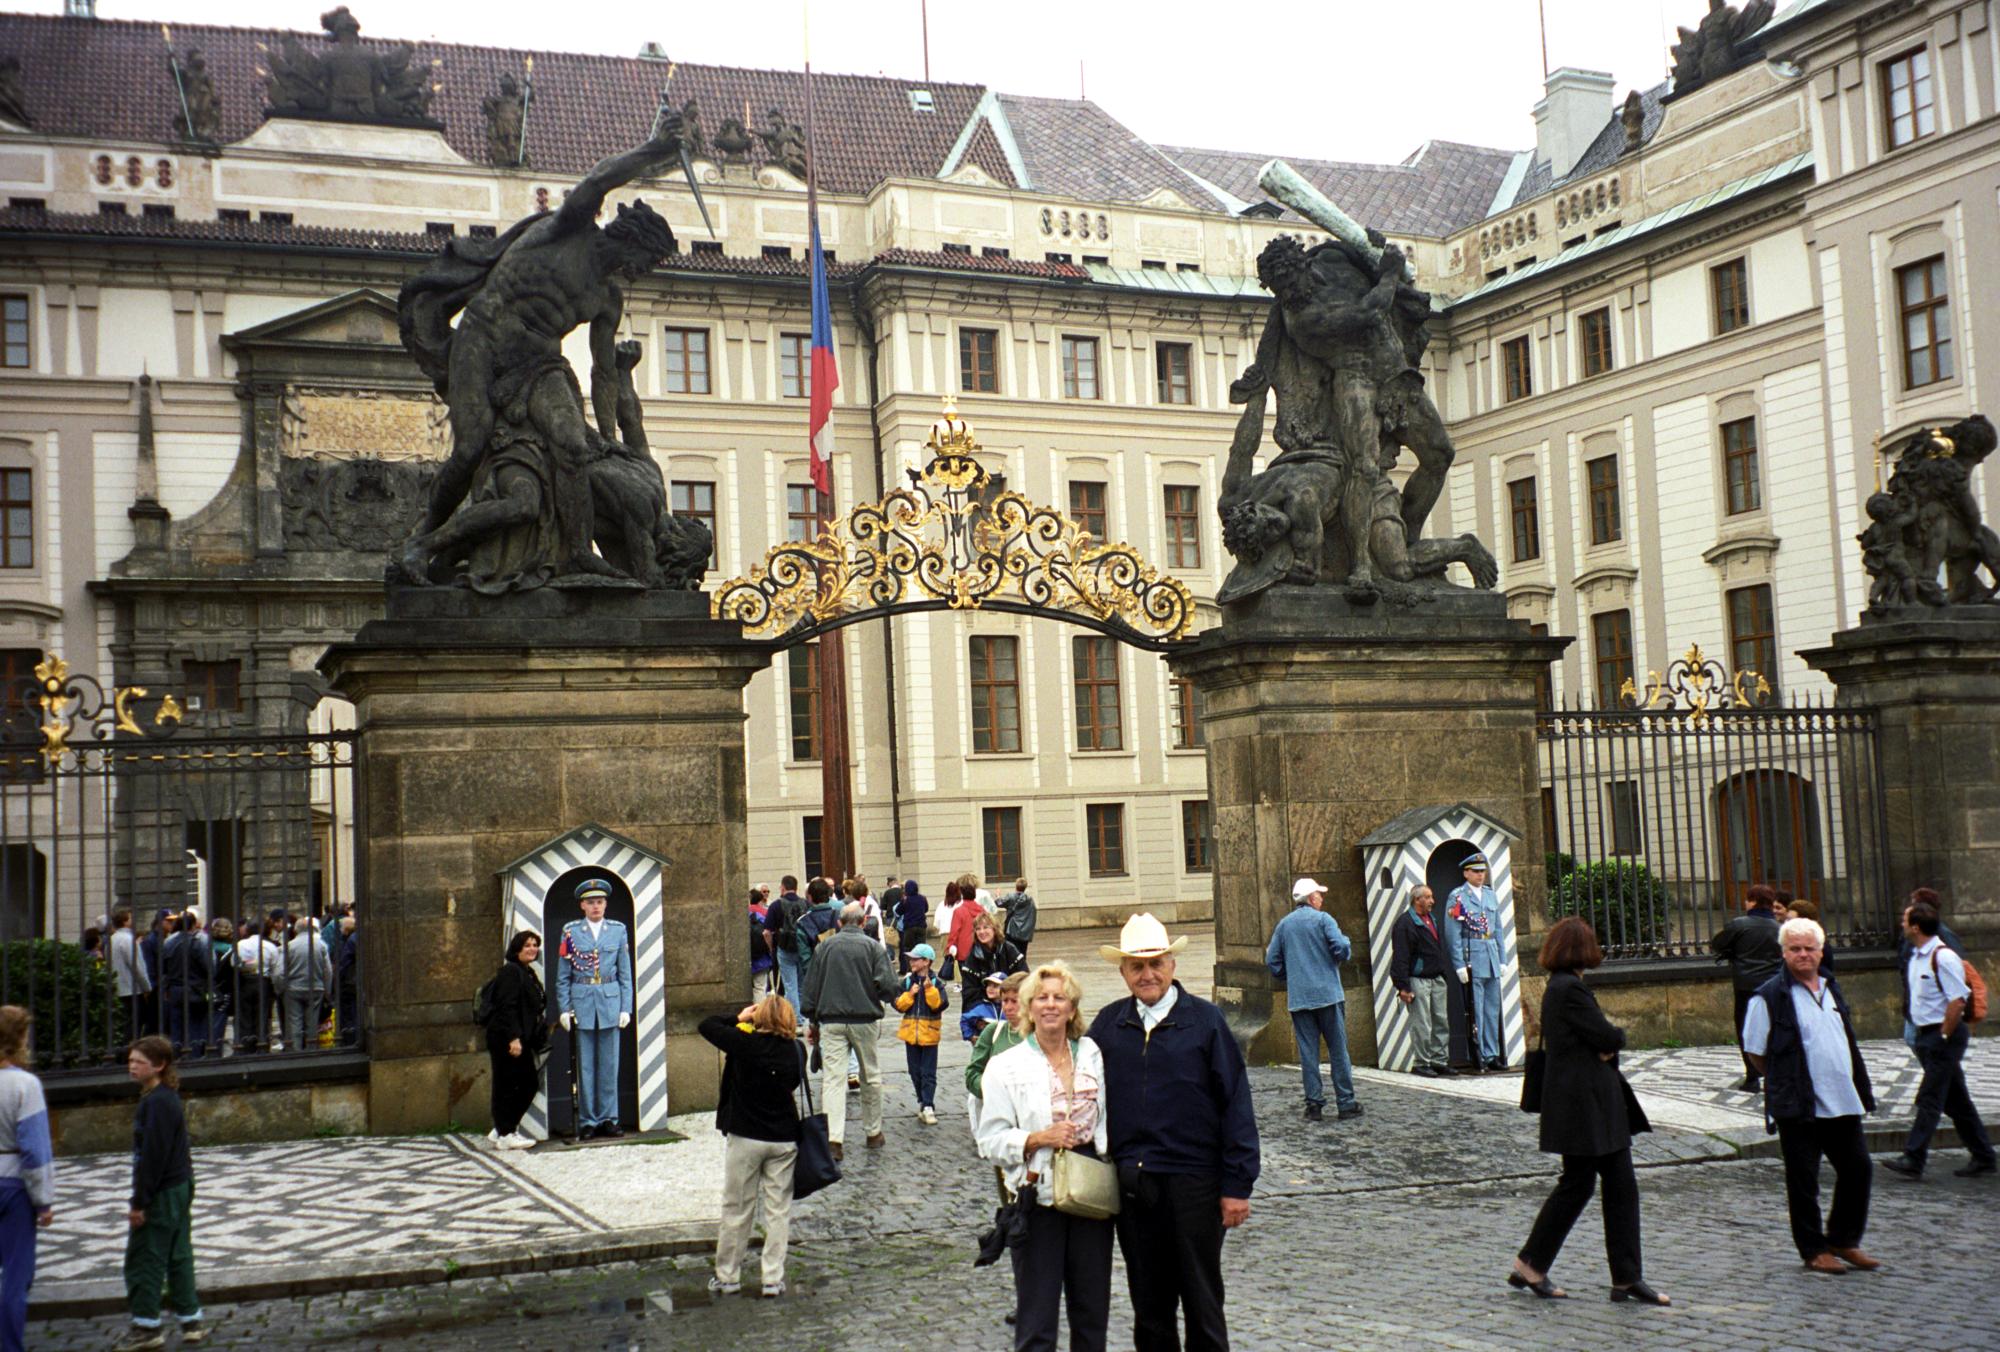 Czech Republic - Royal Castle